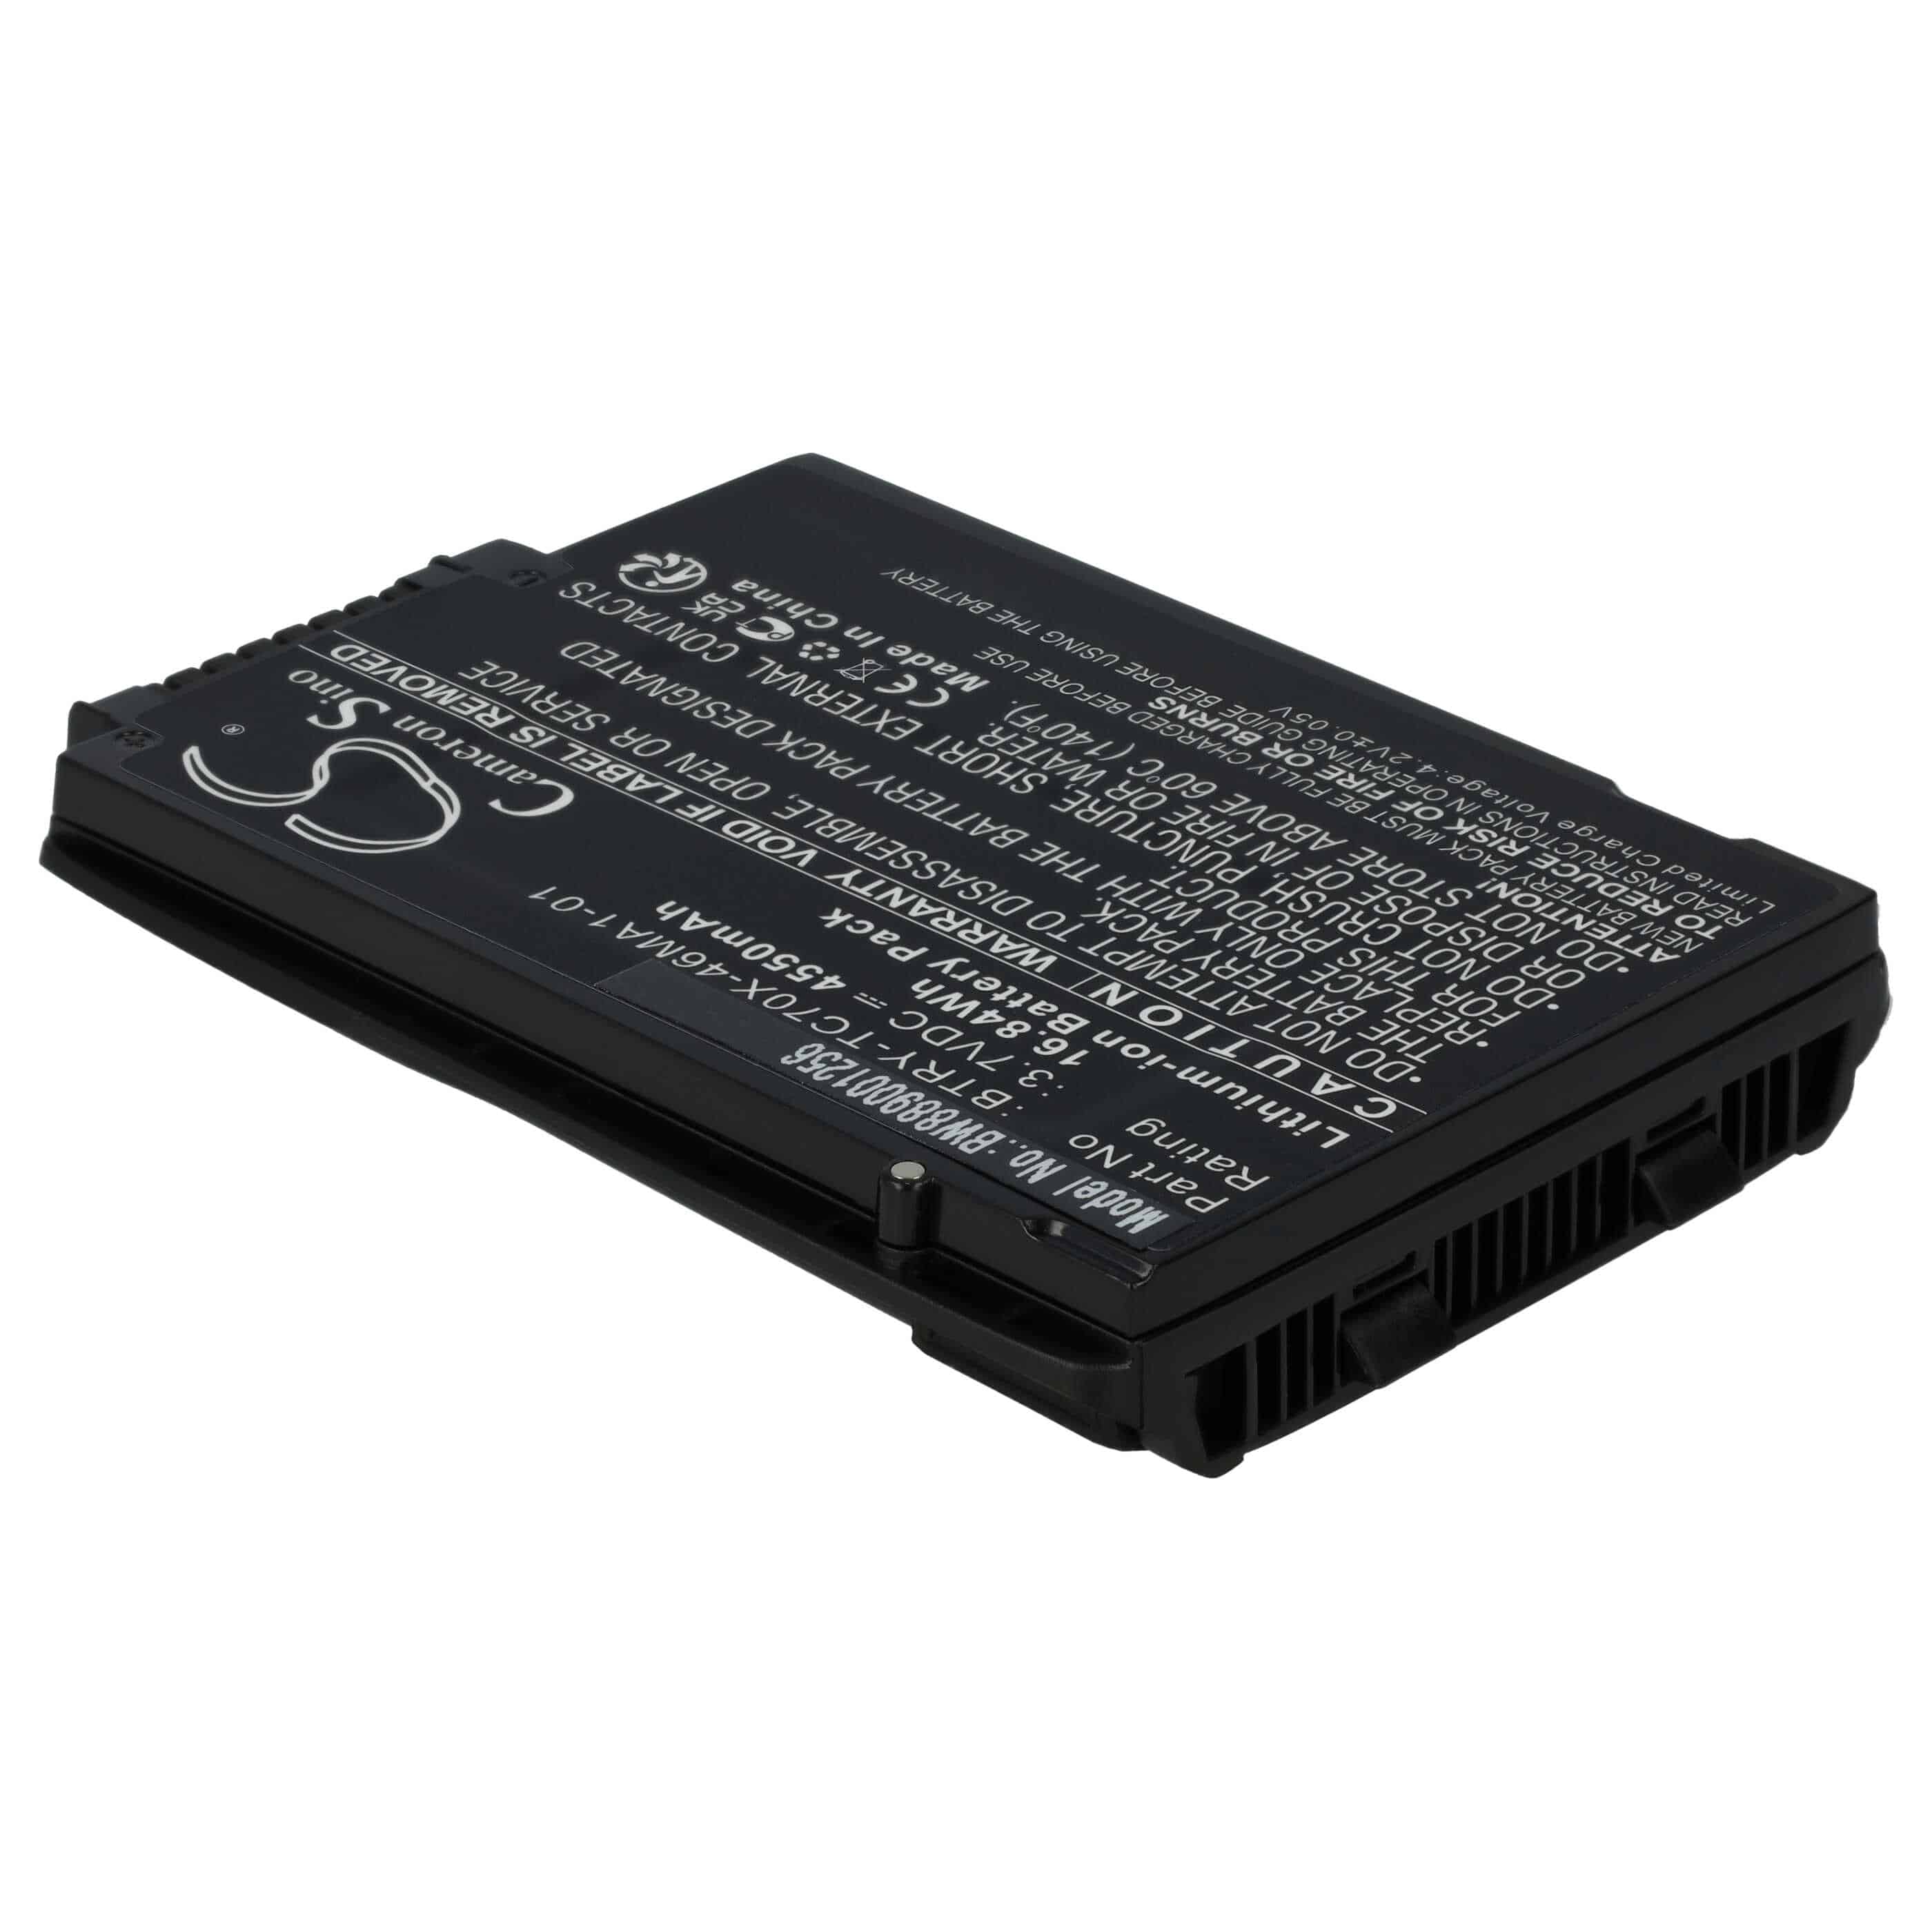 Barcodescanner-Akku als Ersatz für Motorola 82-171249-01, BT-000318, 82-171249-02 - 4550mAh 3,7V Li-Ion